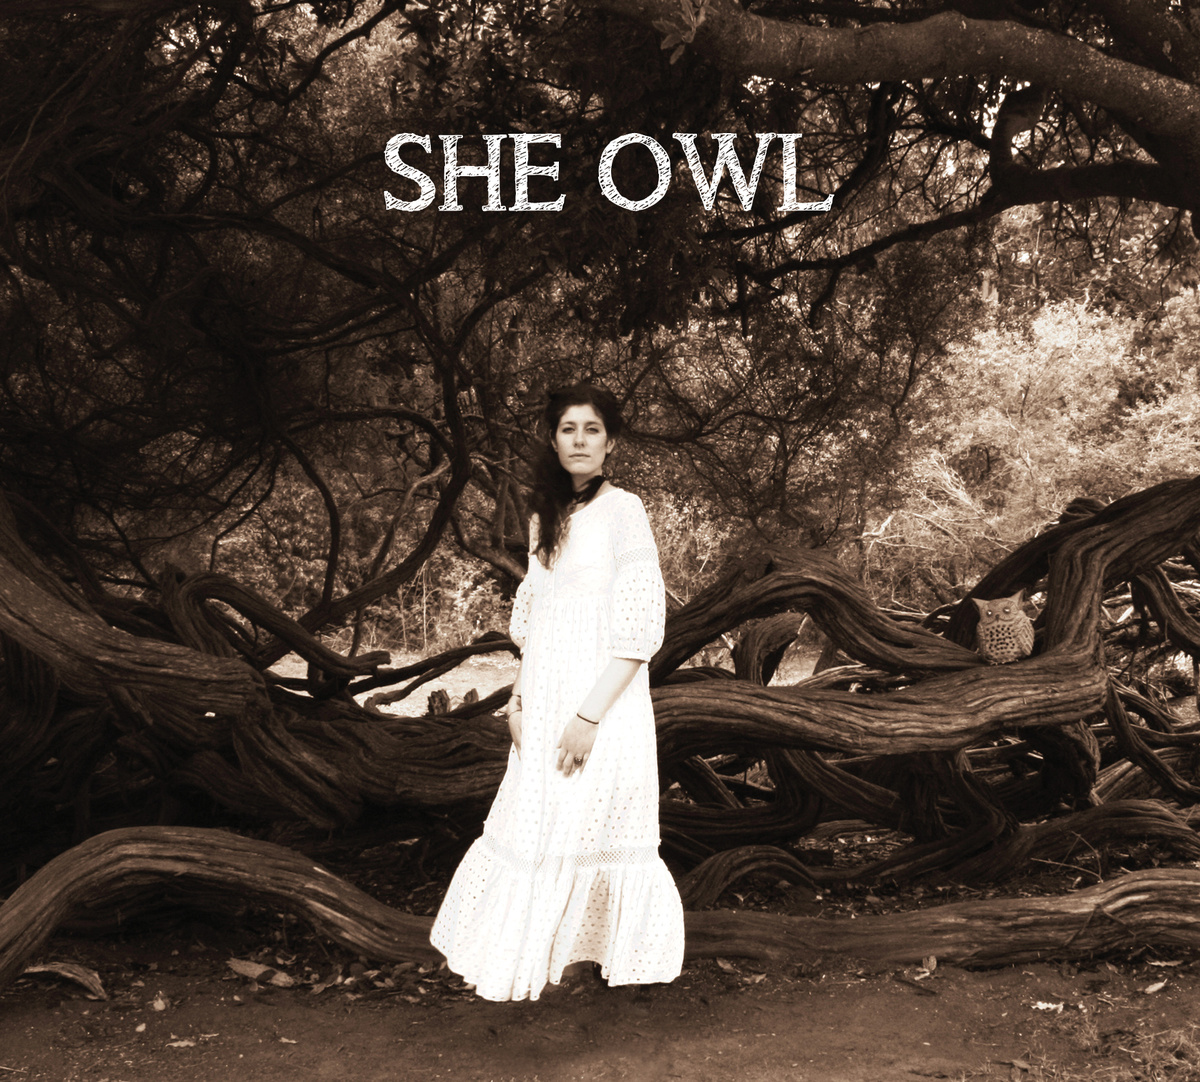 She Owl